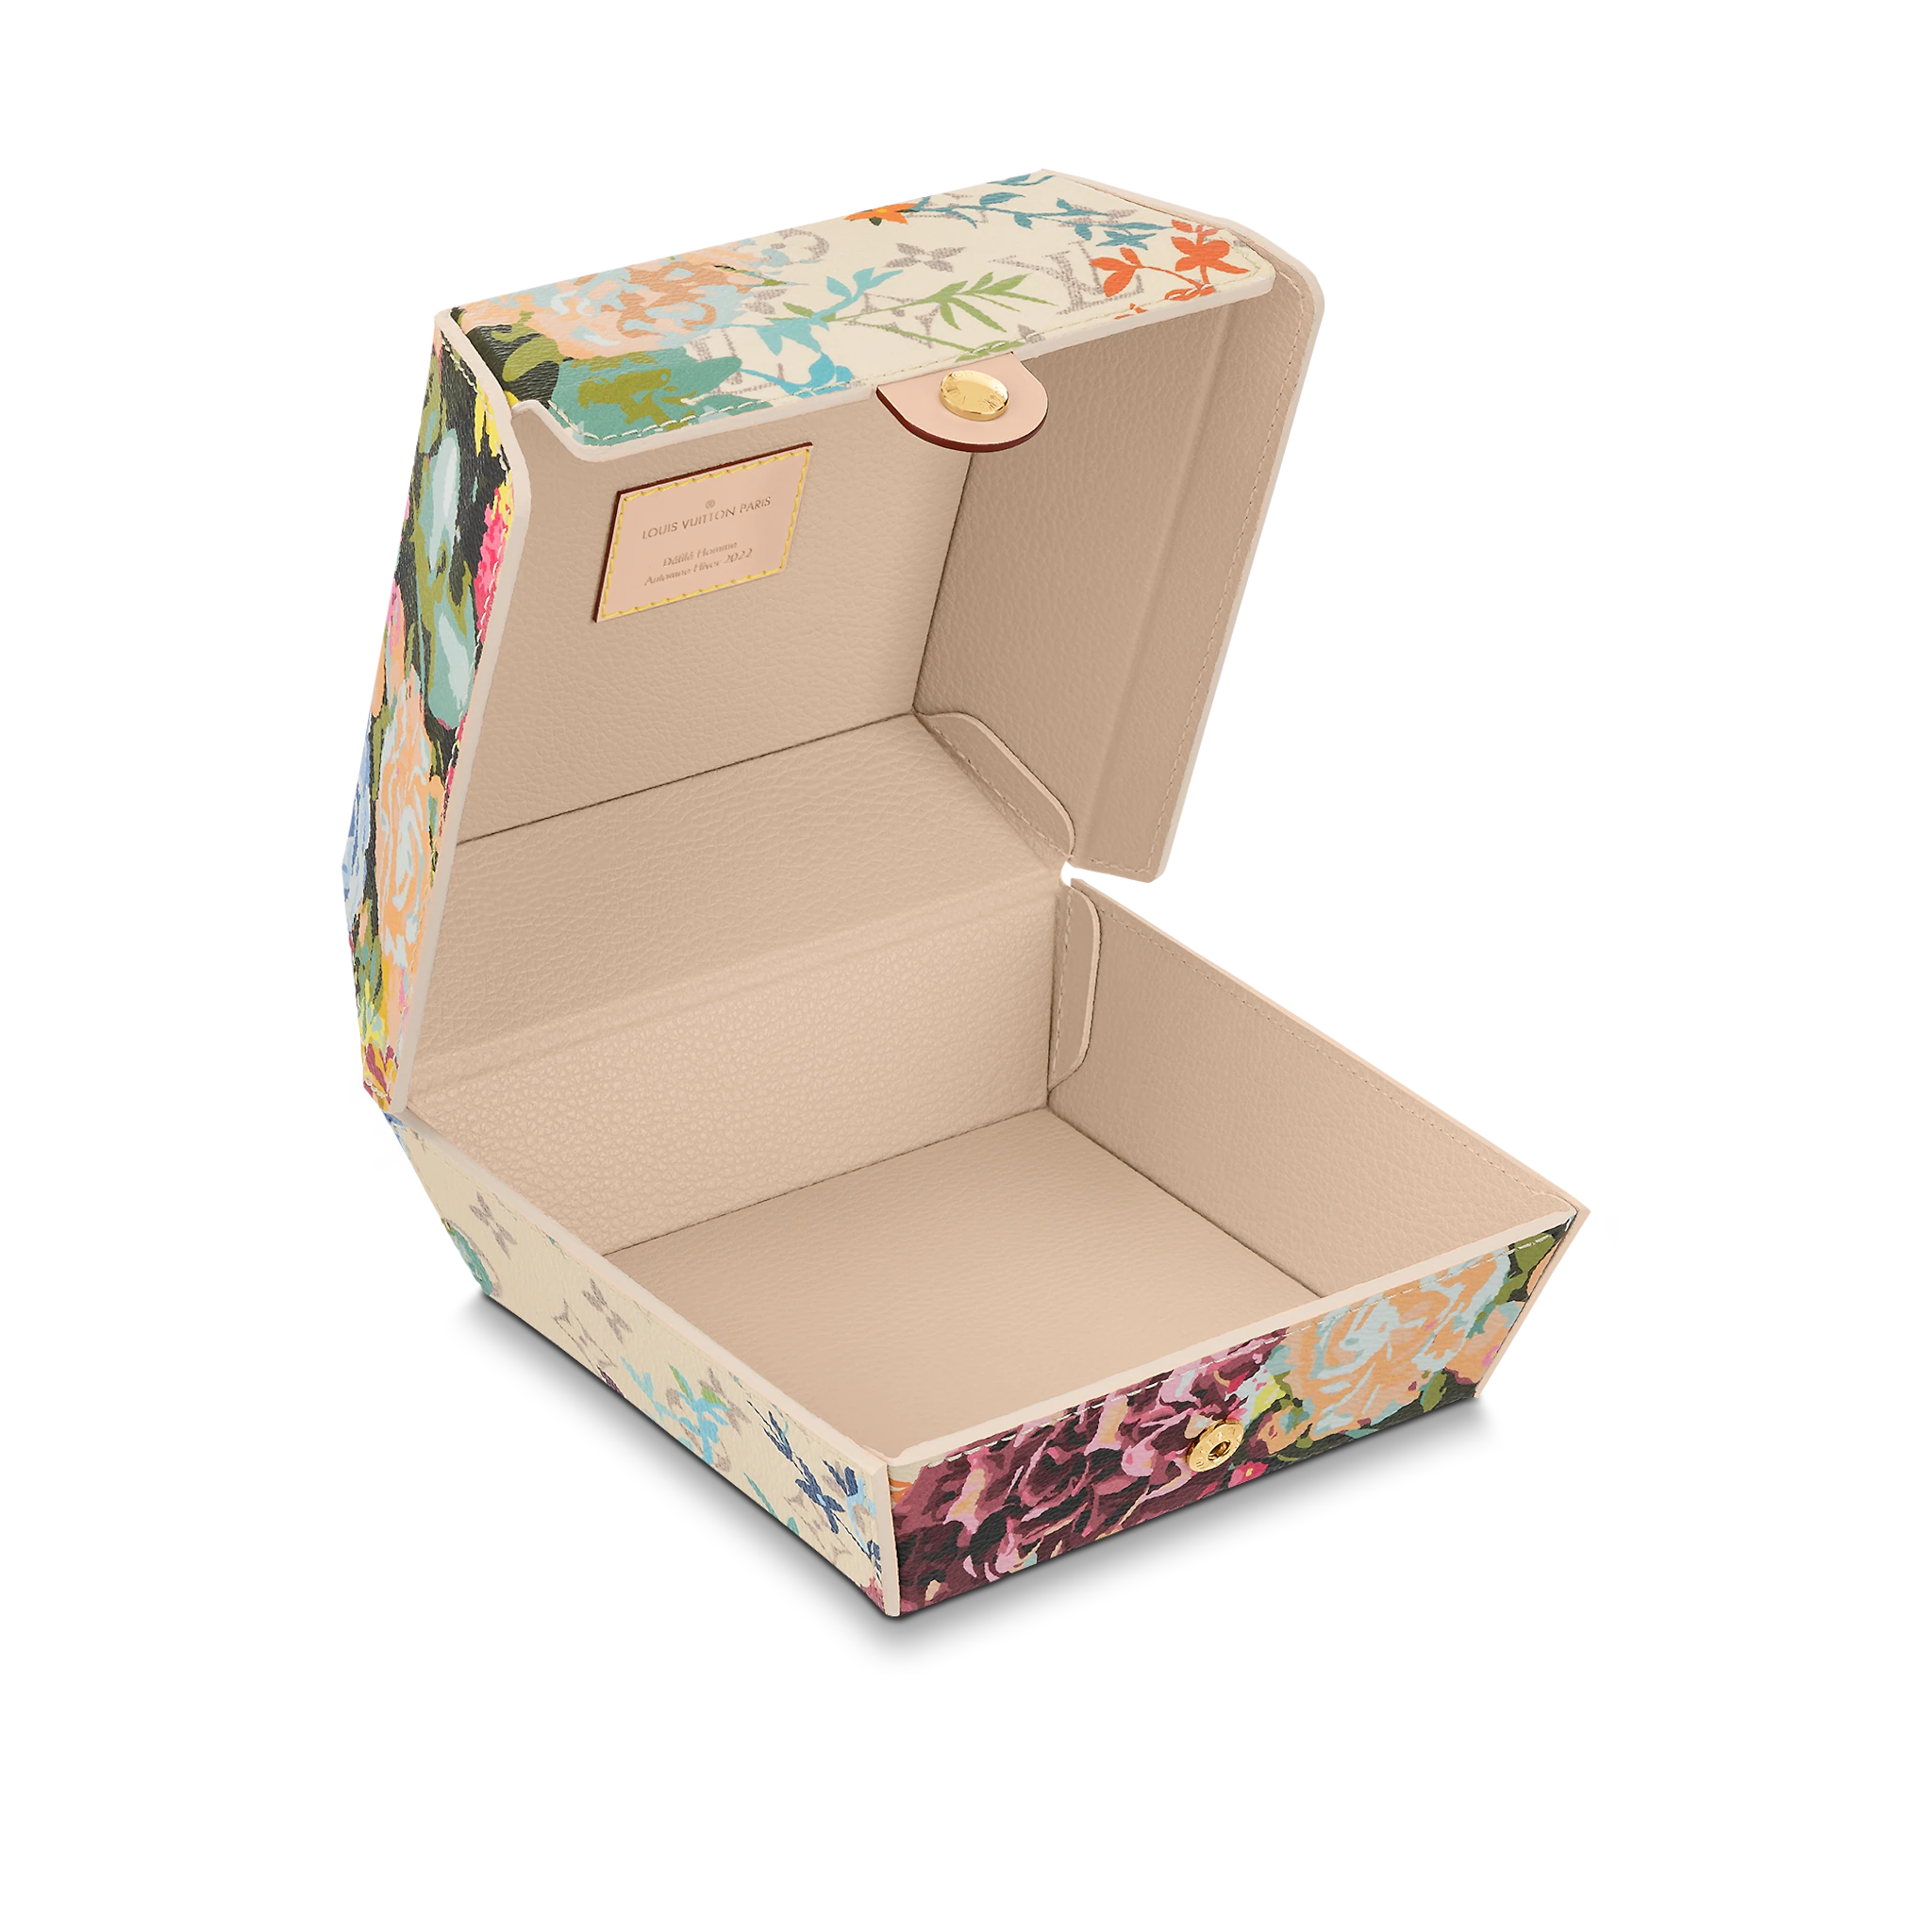 vuitton flower box